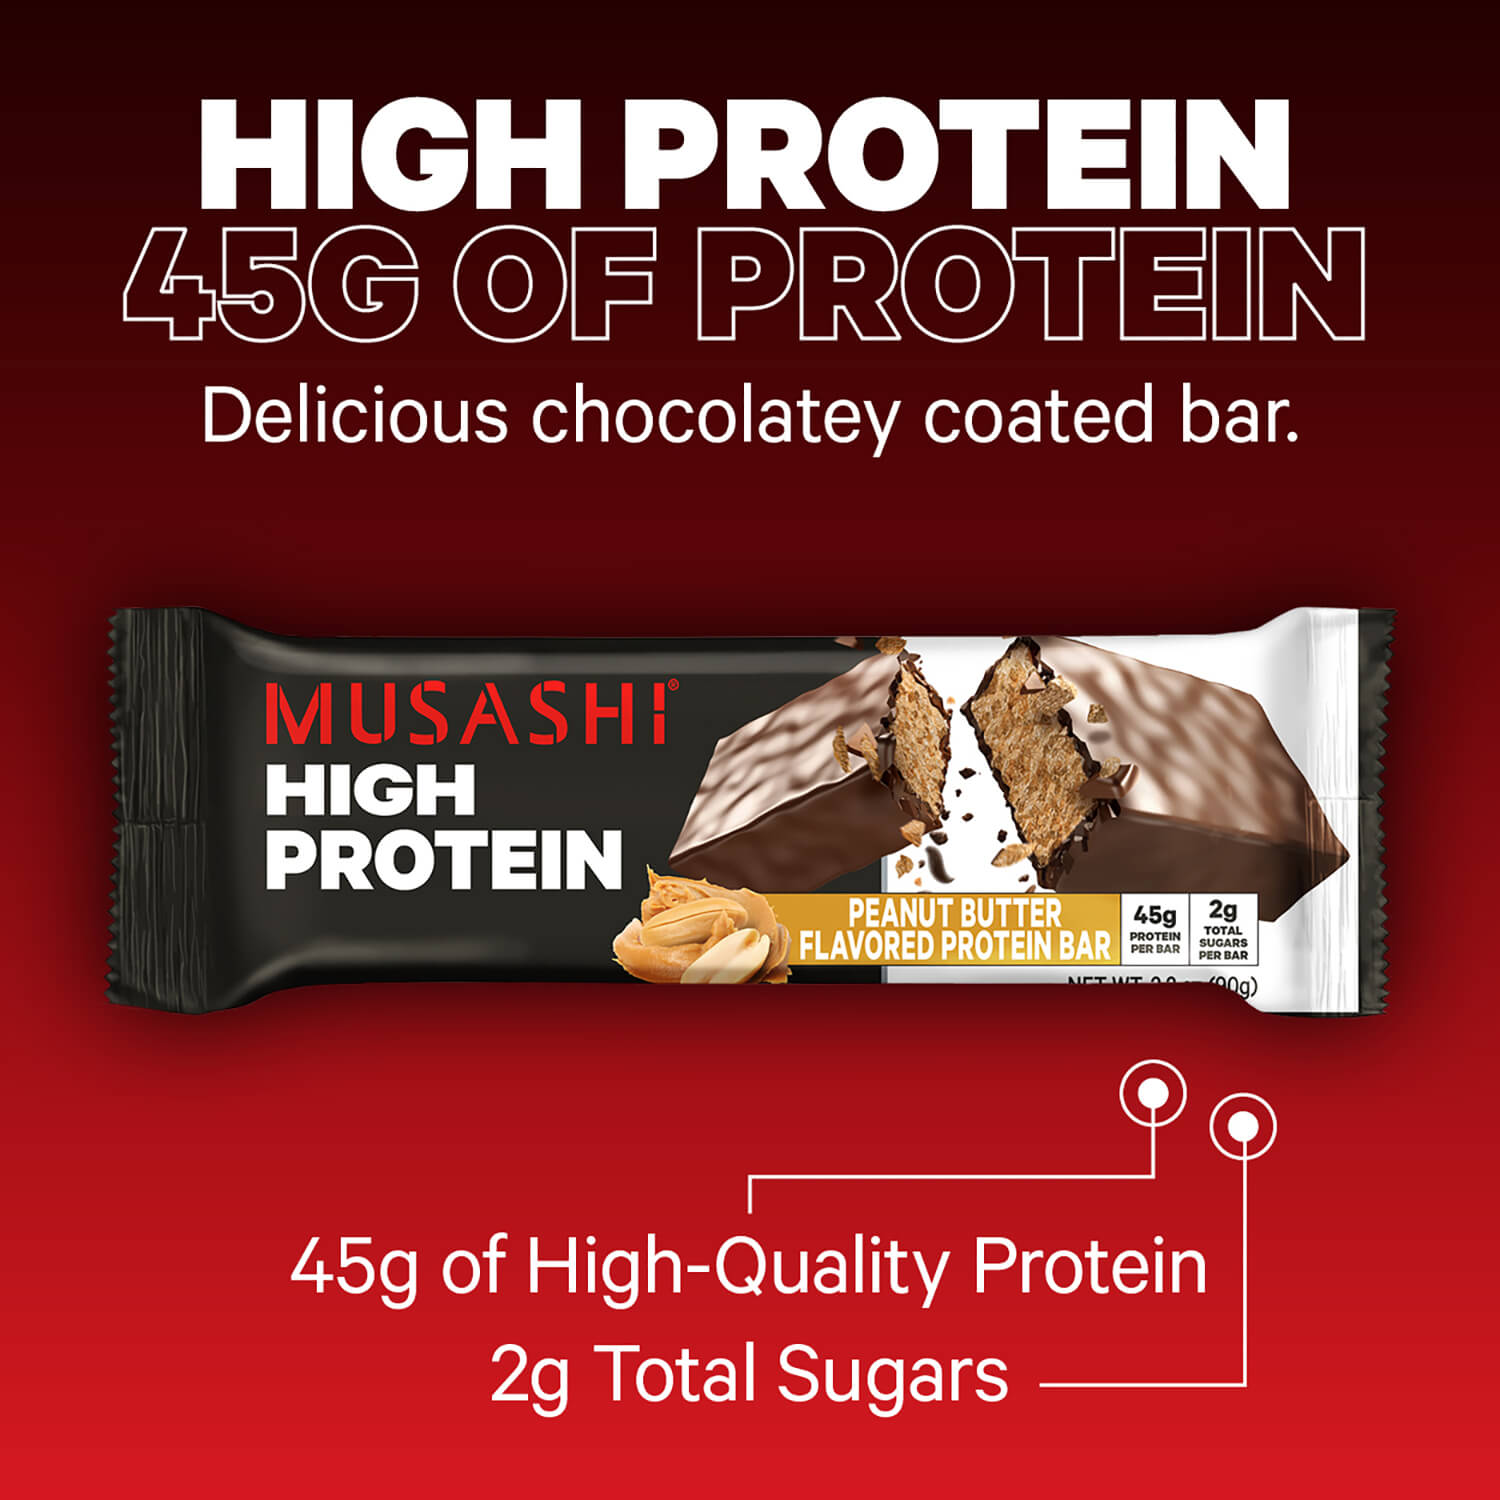 Musashi-high-protein-bar